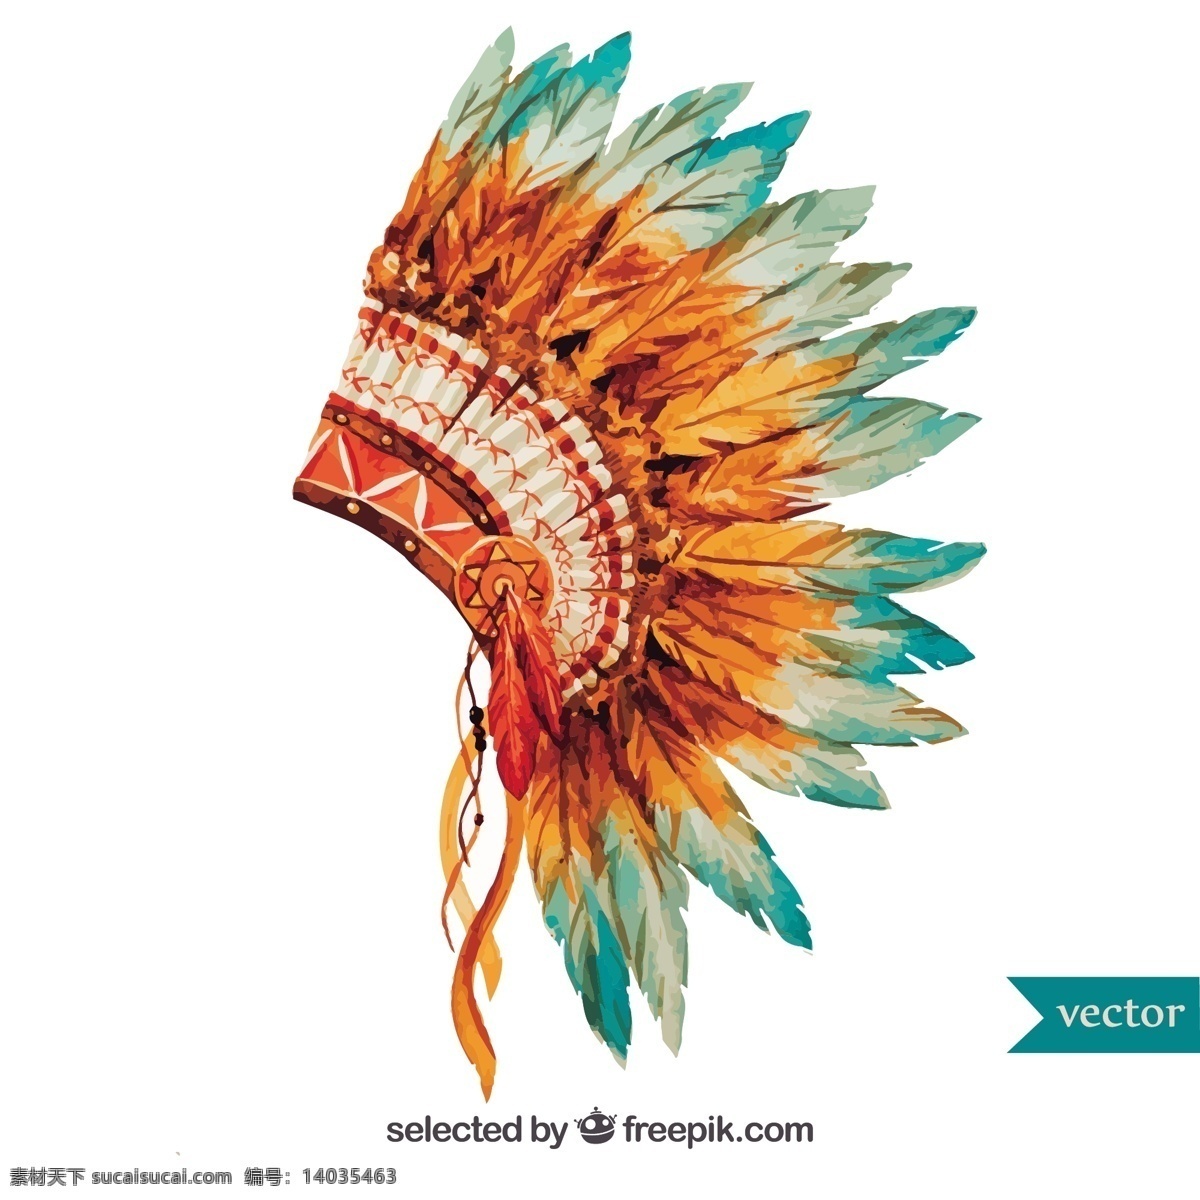 手绘 印第安 头饰 水彩 油漆 羽毛 印度 主任 民族 文化 传统 美国人 行政 部落 阿帕奇 纳瓦霍